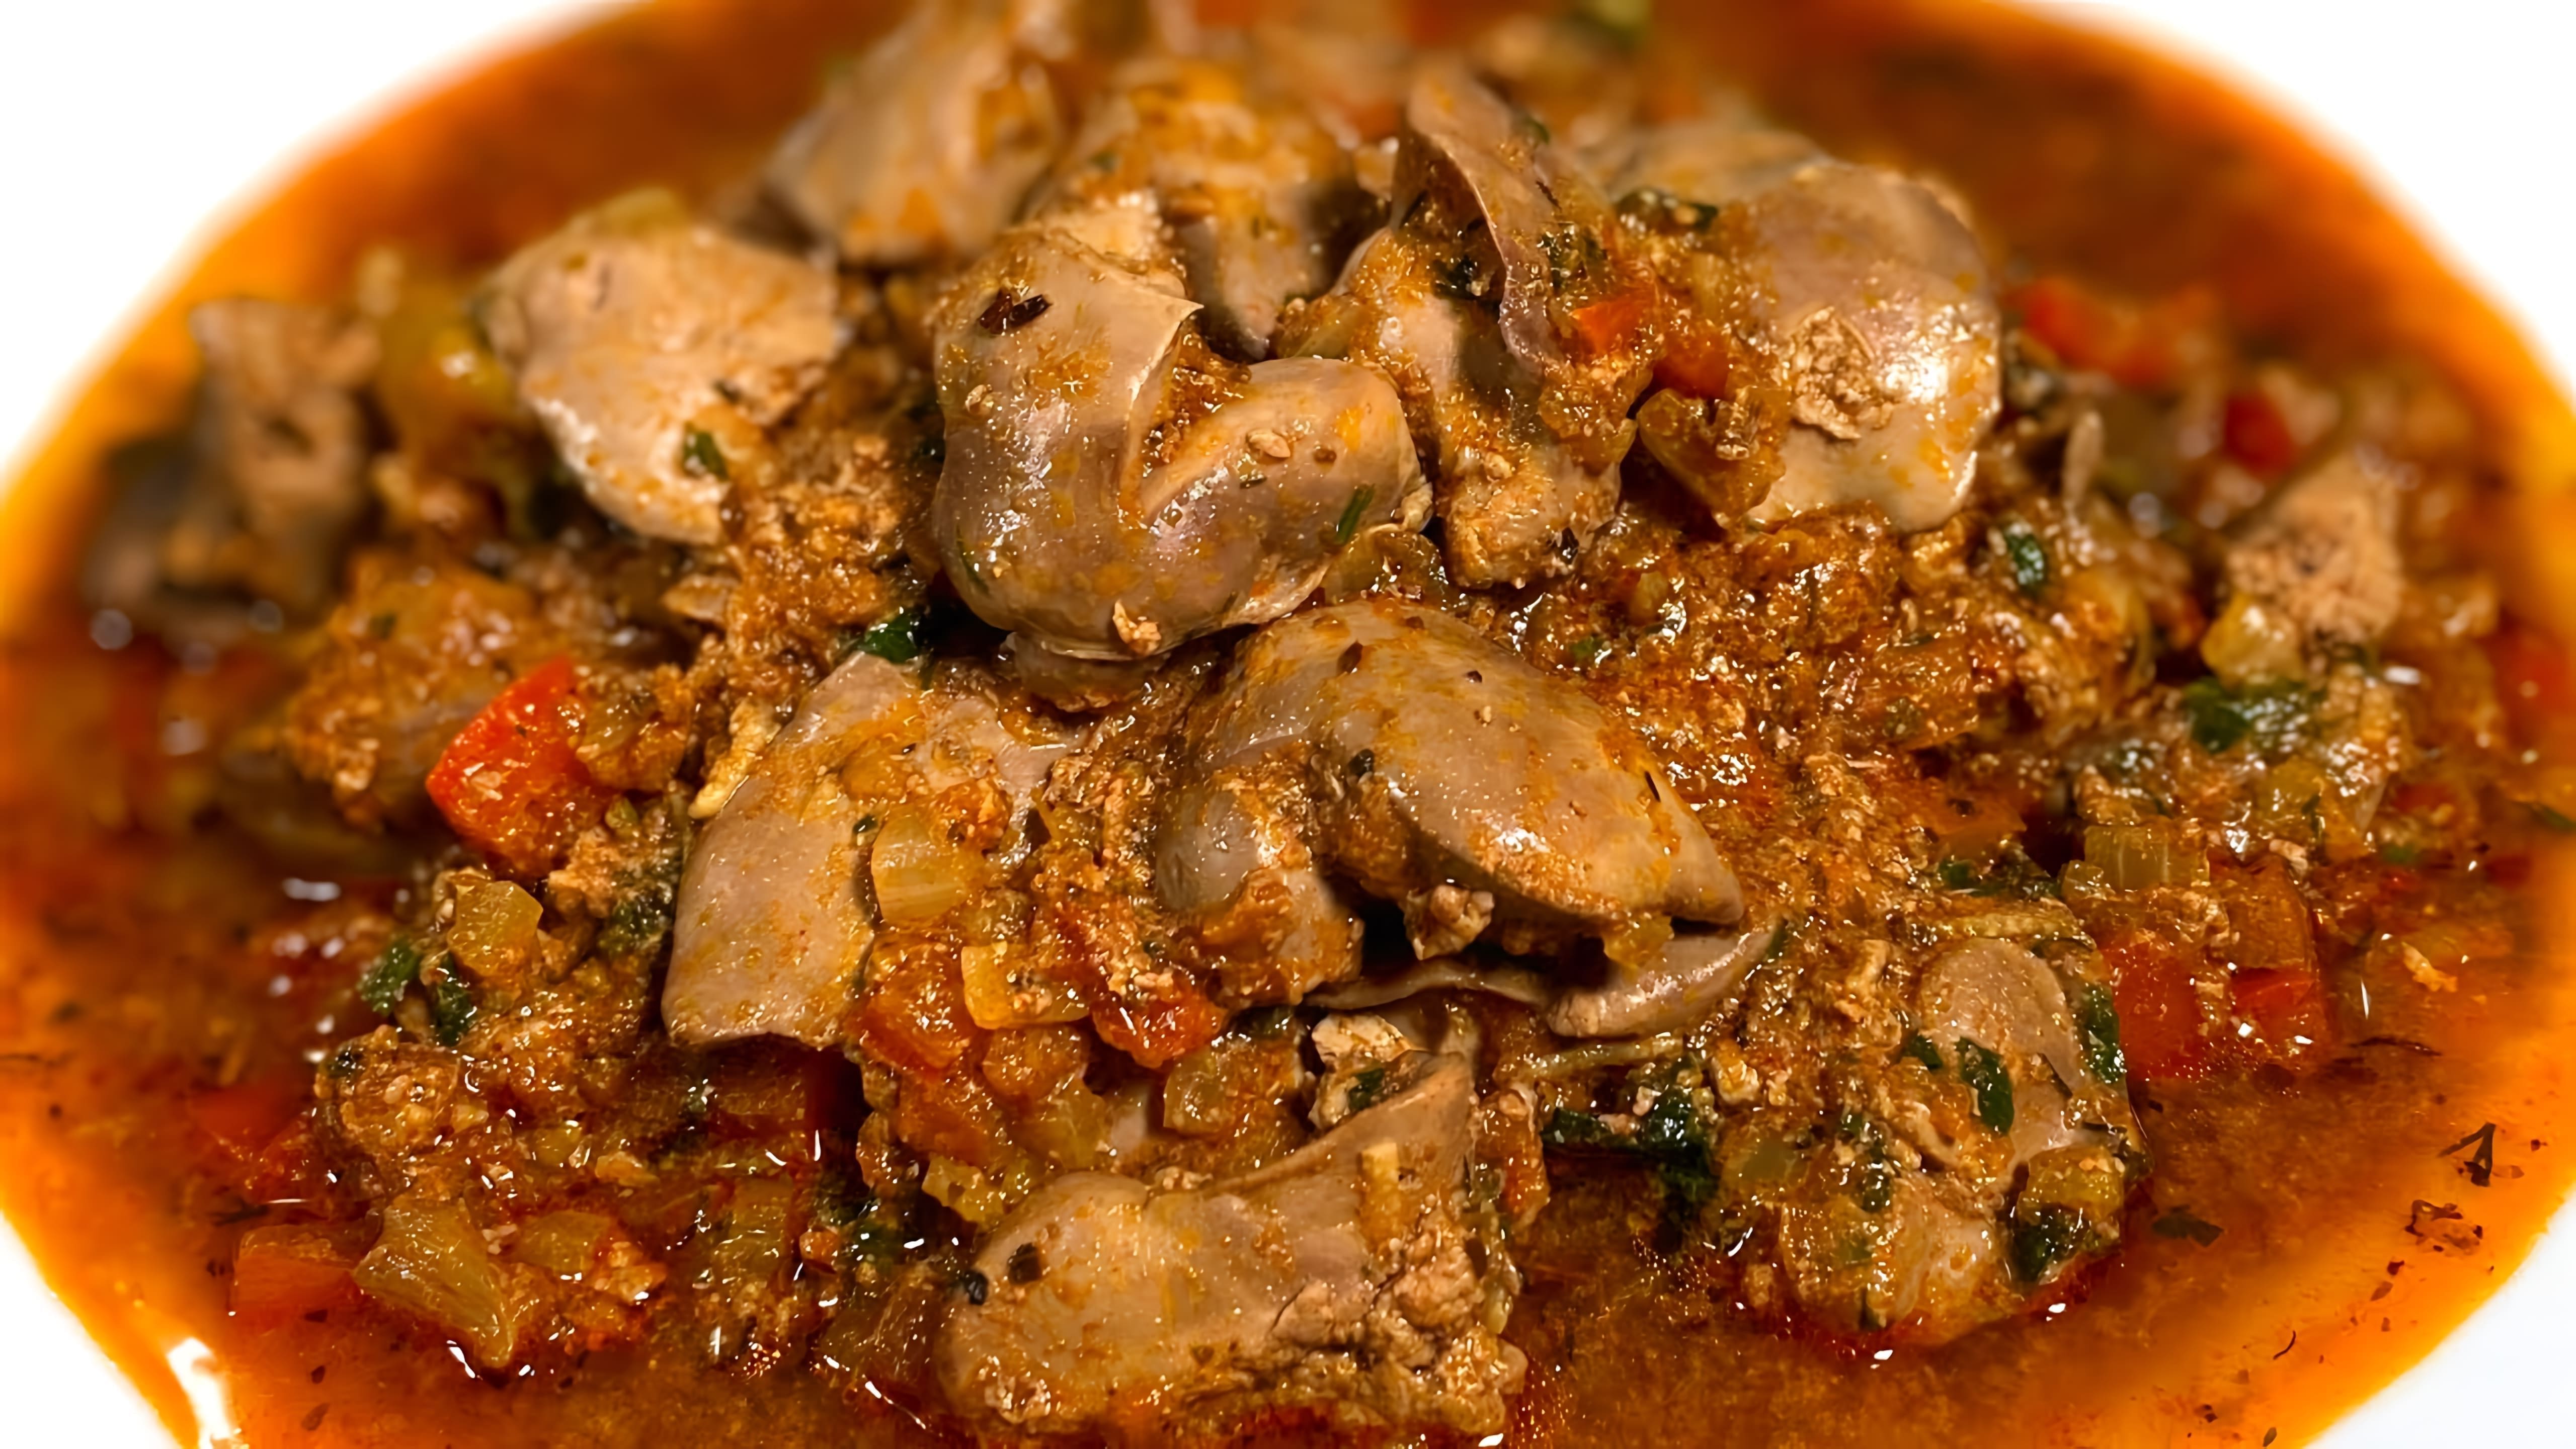 В этом видео демонстрируется рецепт приготовления куриной печени на сковороде с томатной подливкой